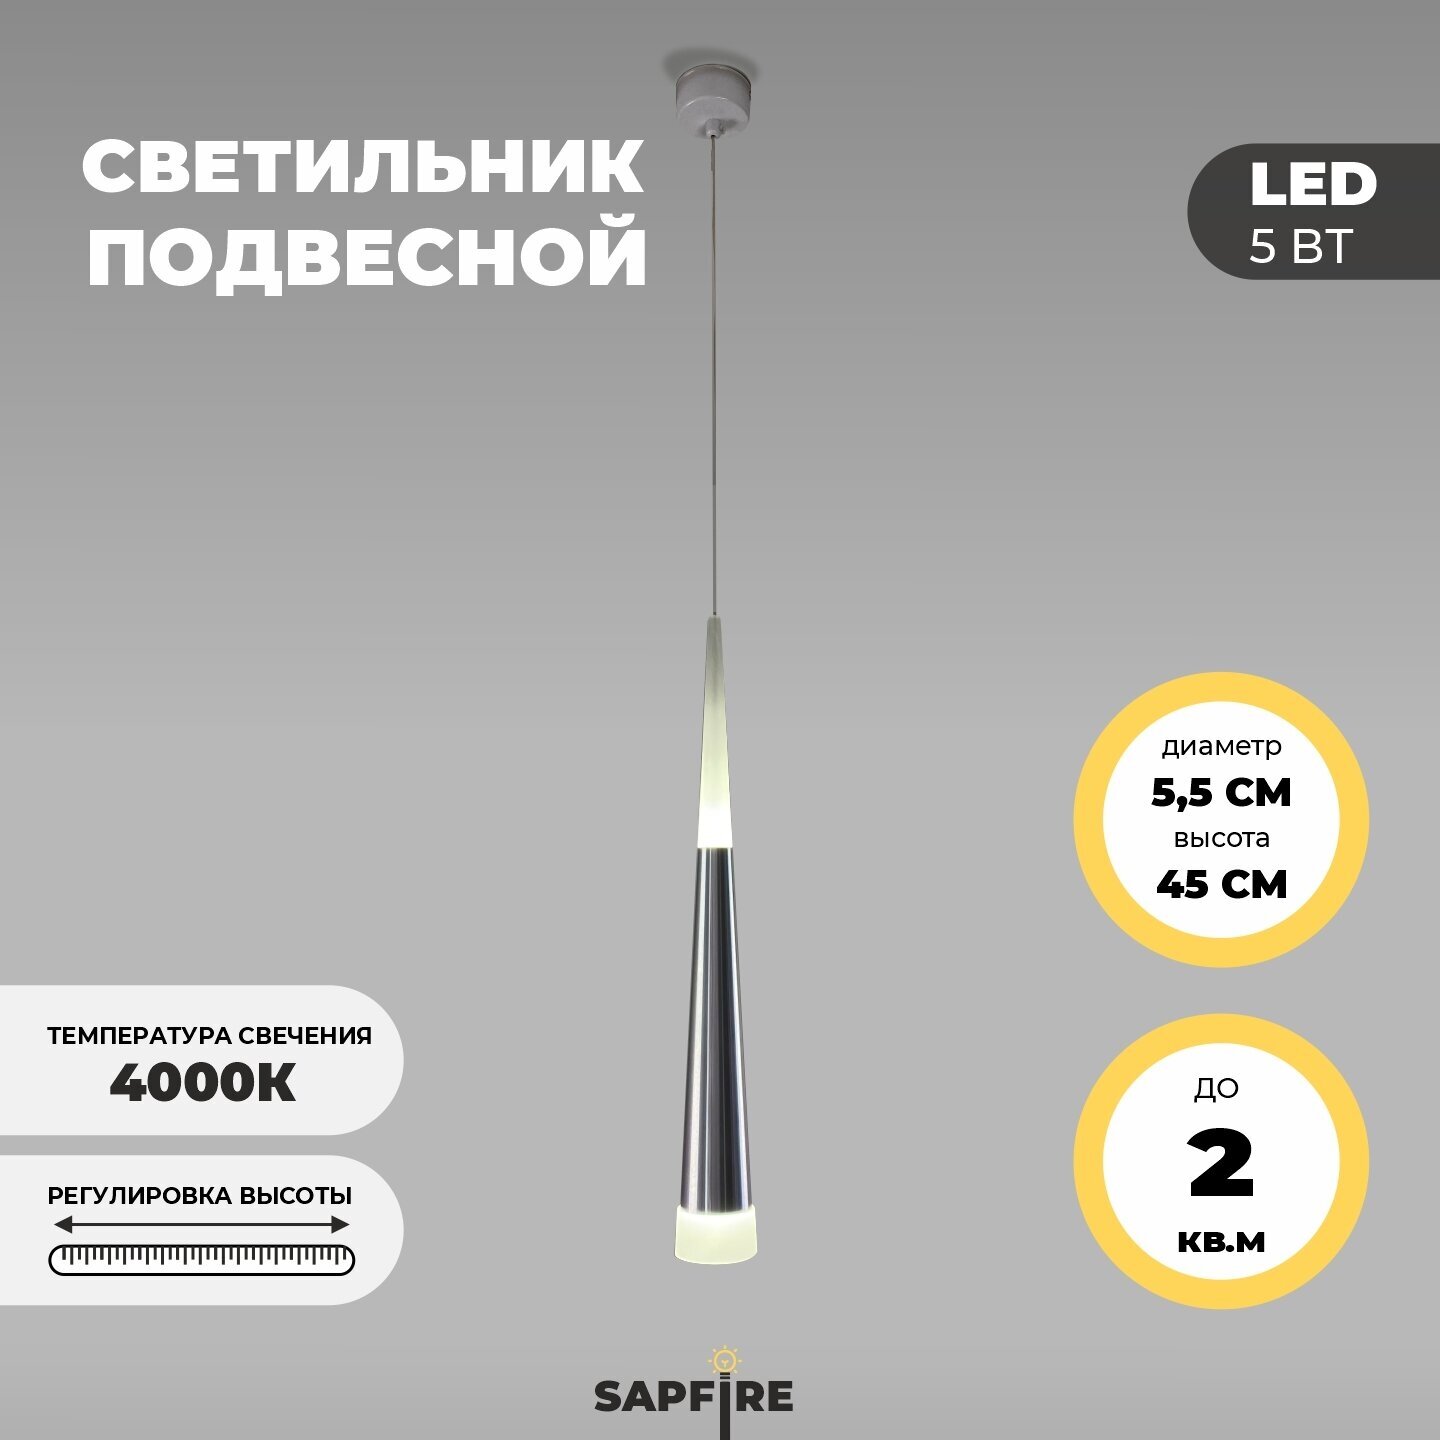 Светильник подвесной светодиодный Sapfire, 5 Вт, матовый хром